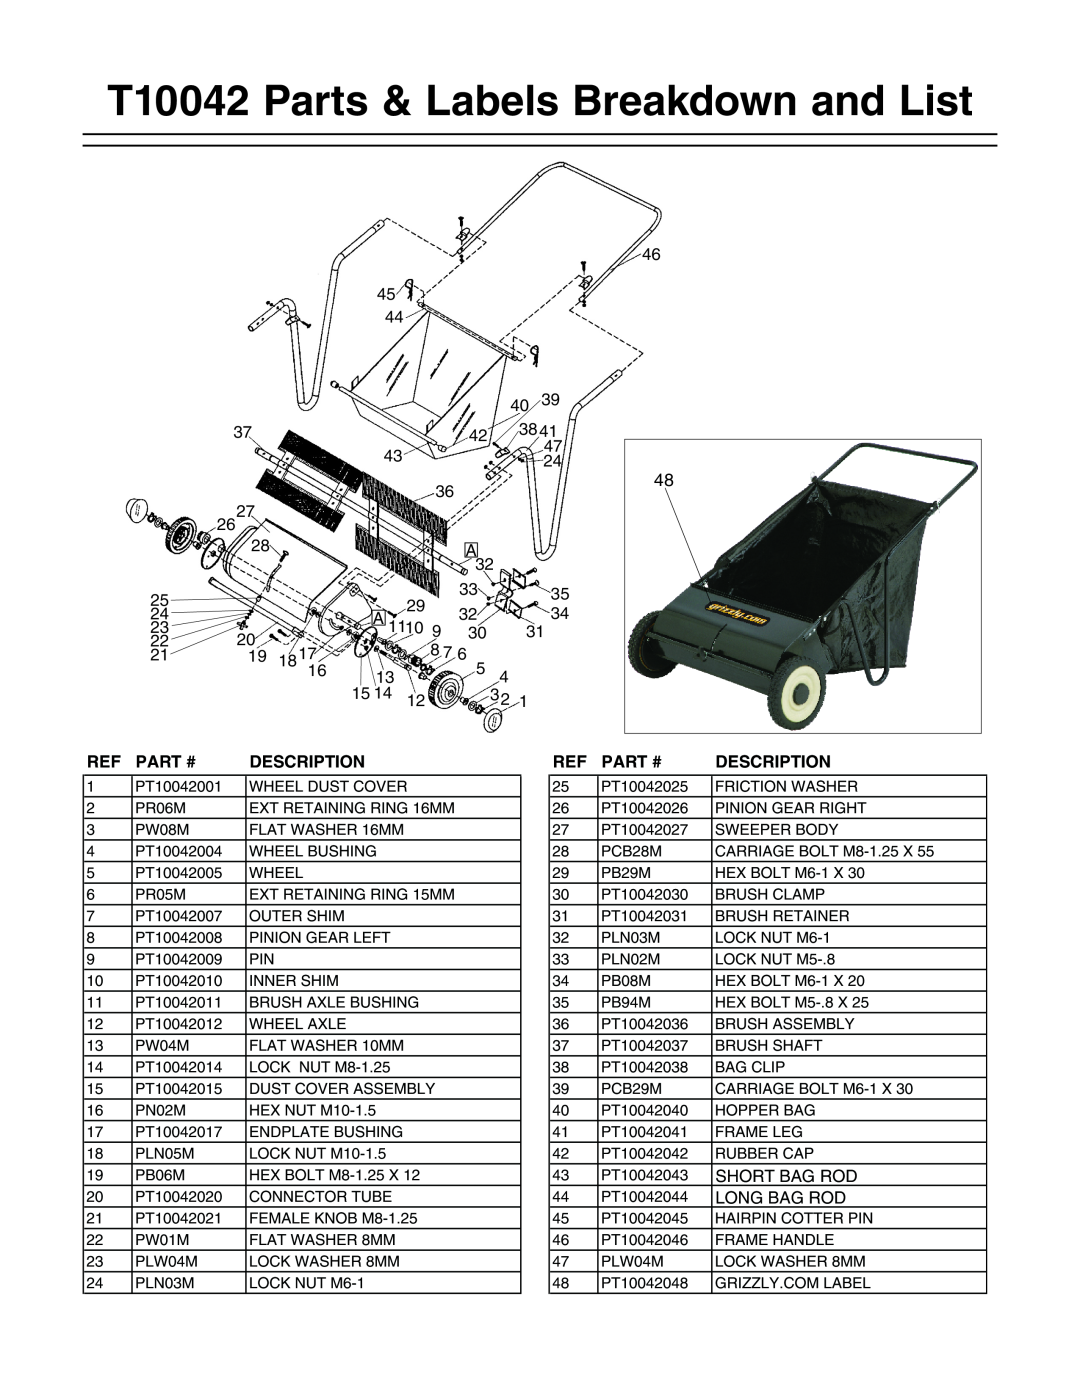 Grizzly instruction sheet T10042 Parts & Labels Breakdown and List, Part #, Description, Short Bag Rod, Long Bag Rod 